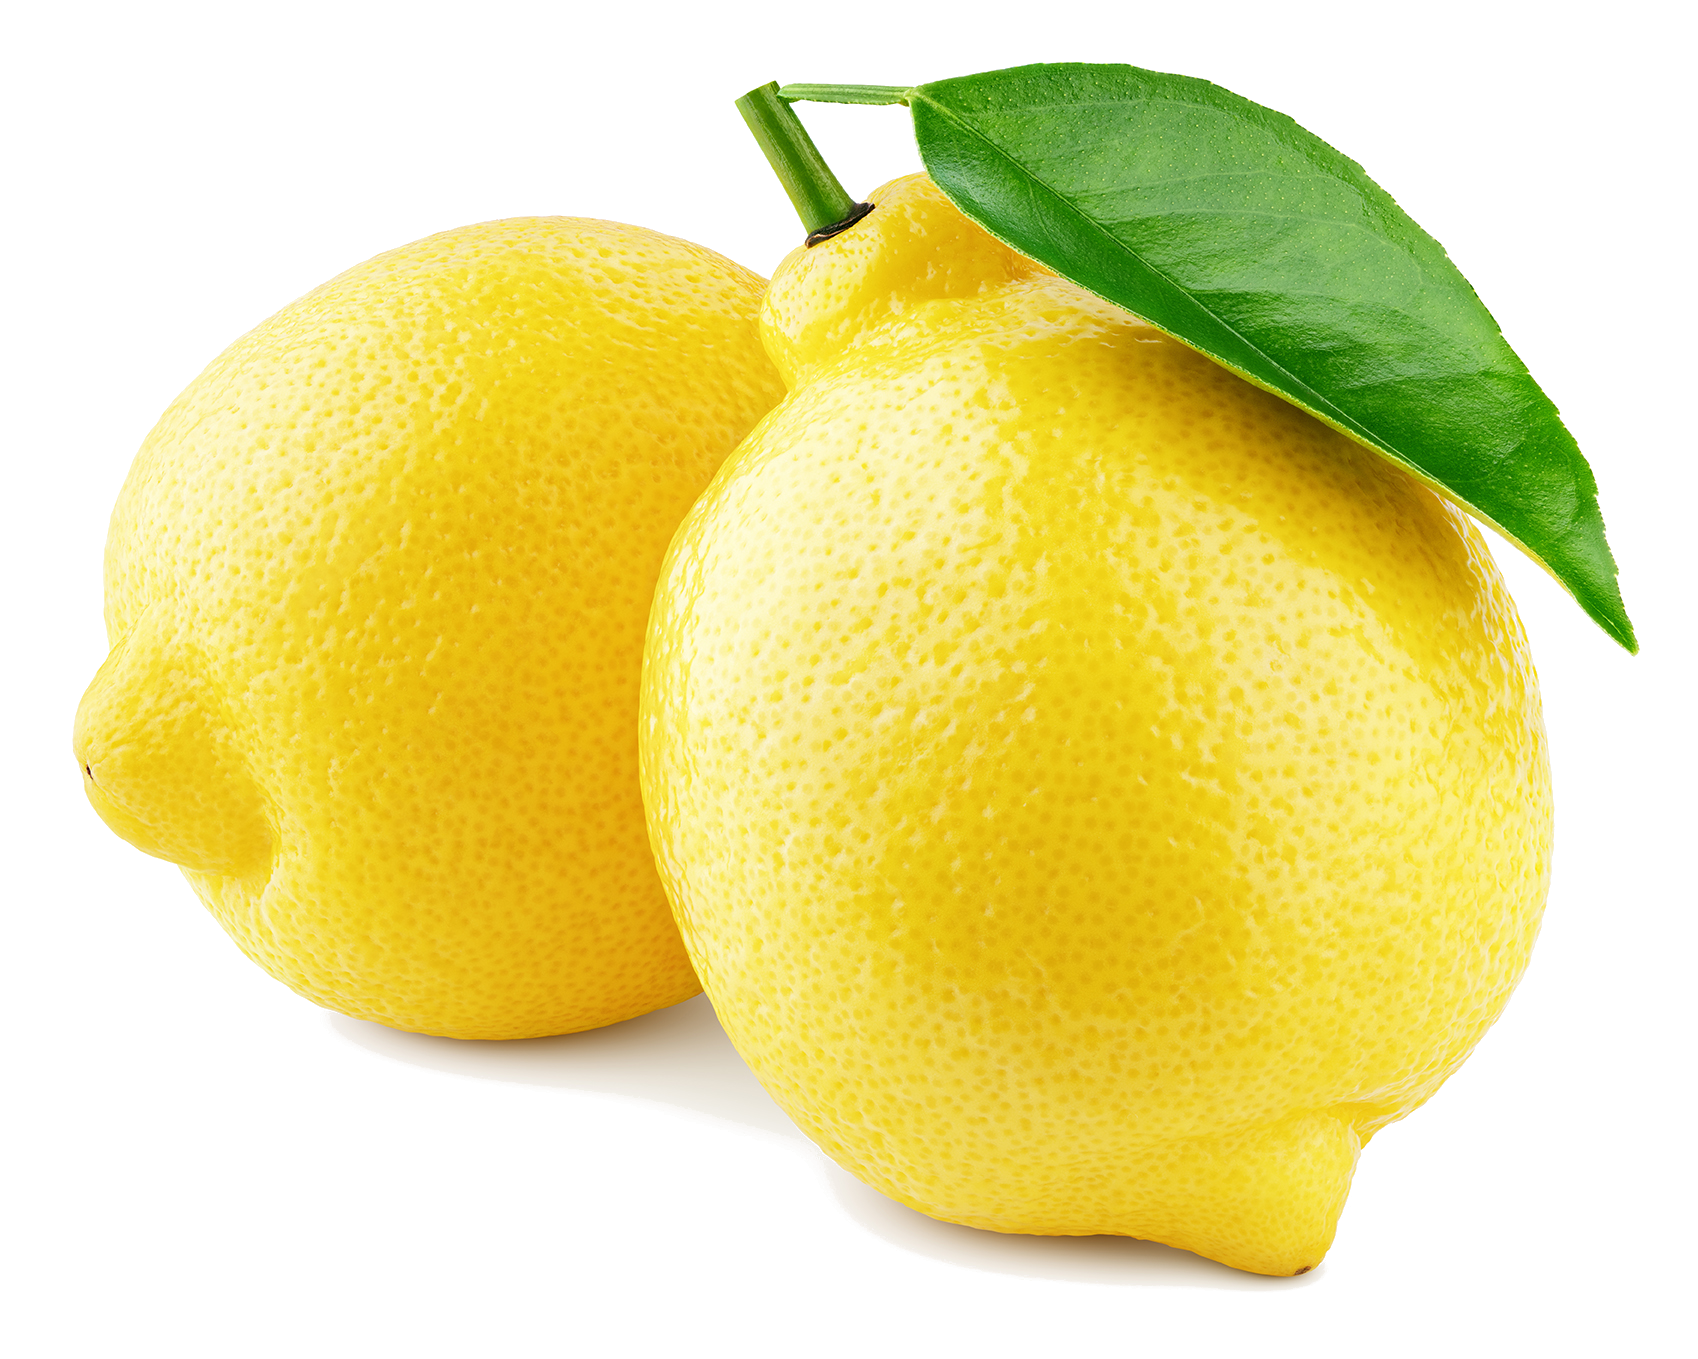 Limón Primofiori-El limón primofiori, también llamado fino, tiene forma ovalada. La corteza de los frutos es fina y lisa. Tiene mucho zumo y una delicada acidez. Su producción comprende desde septiembre hasta abril.